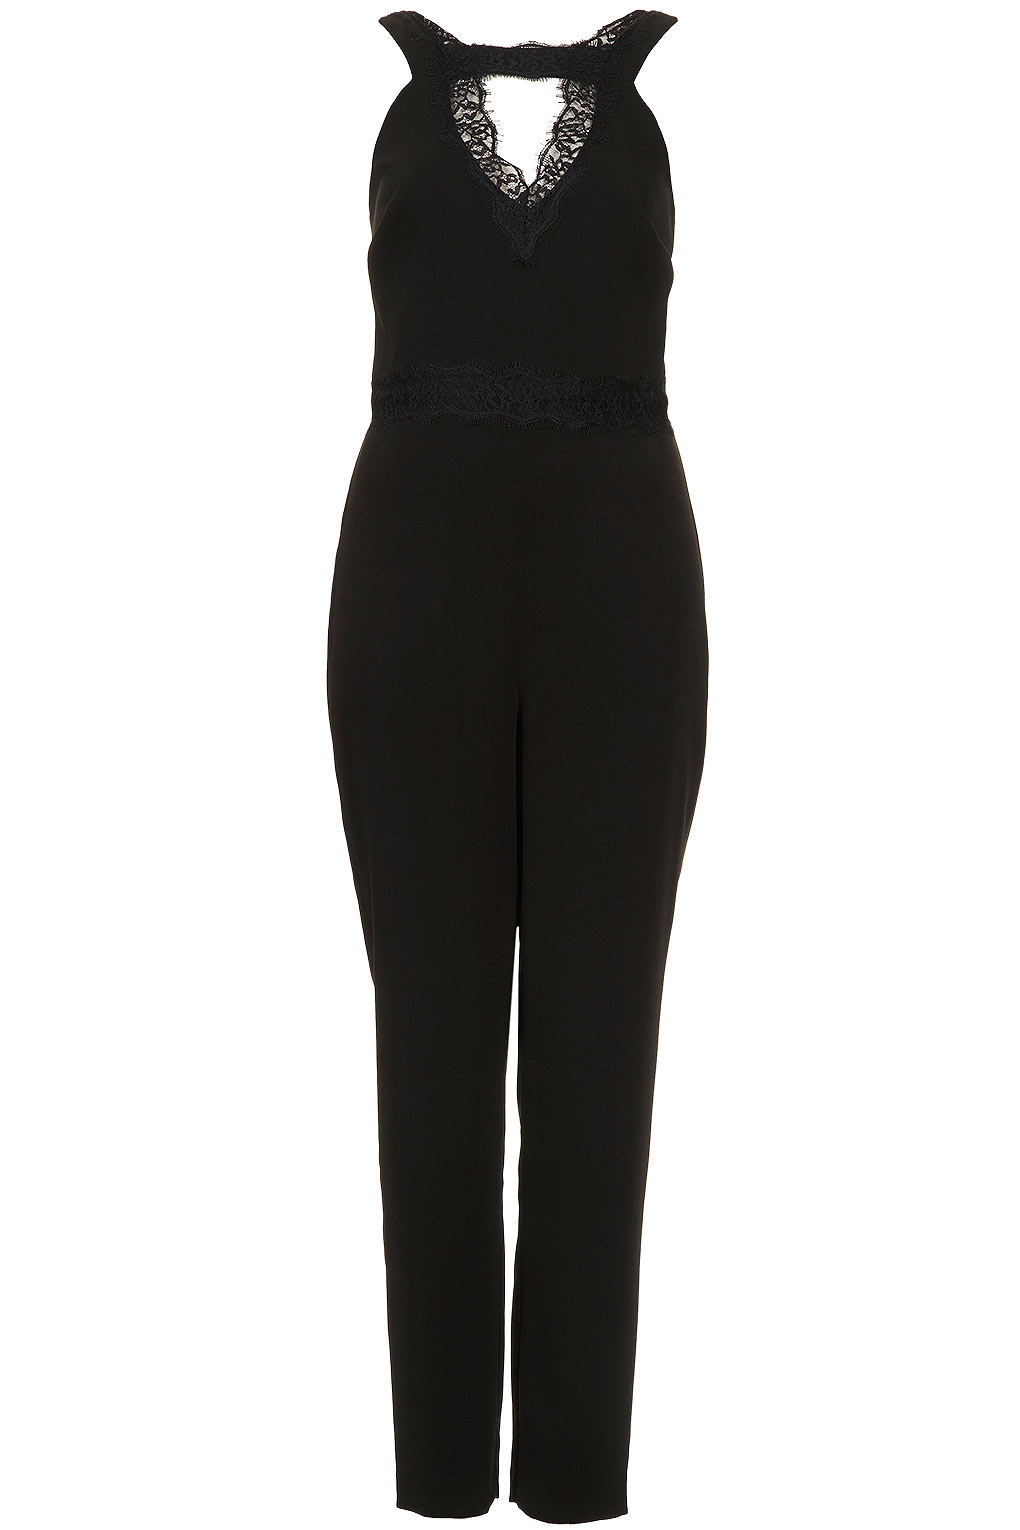 Lyst - Topshop Cut Out Lace Jumpsuit in Black